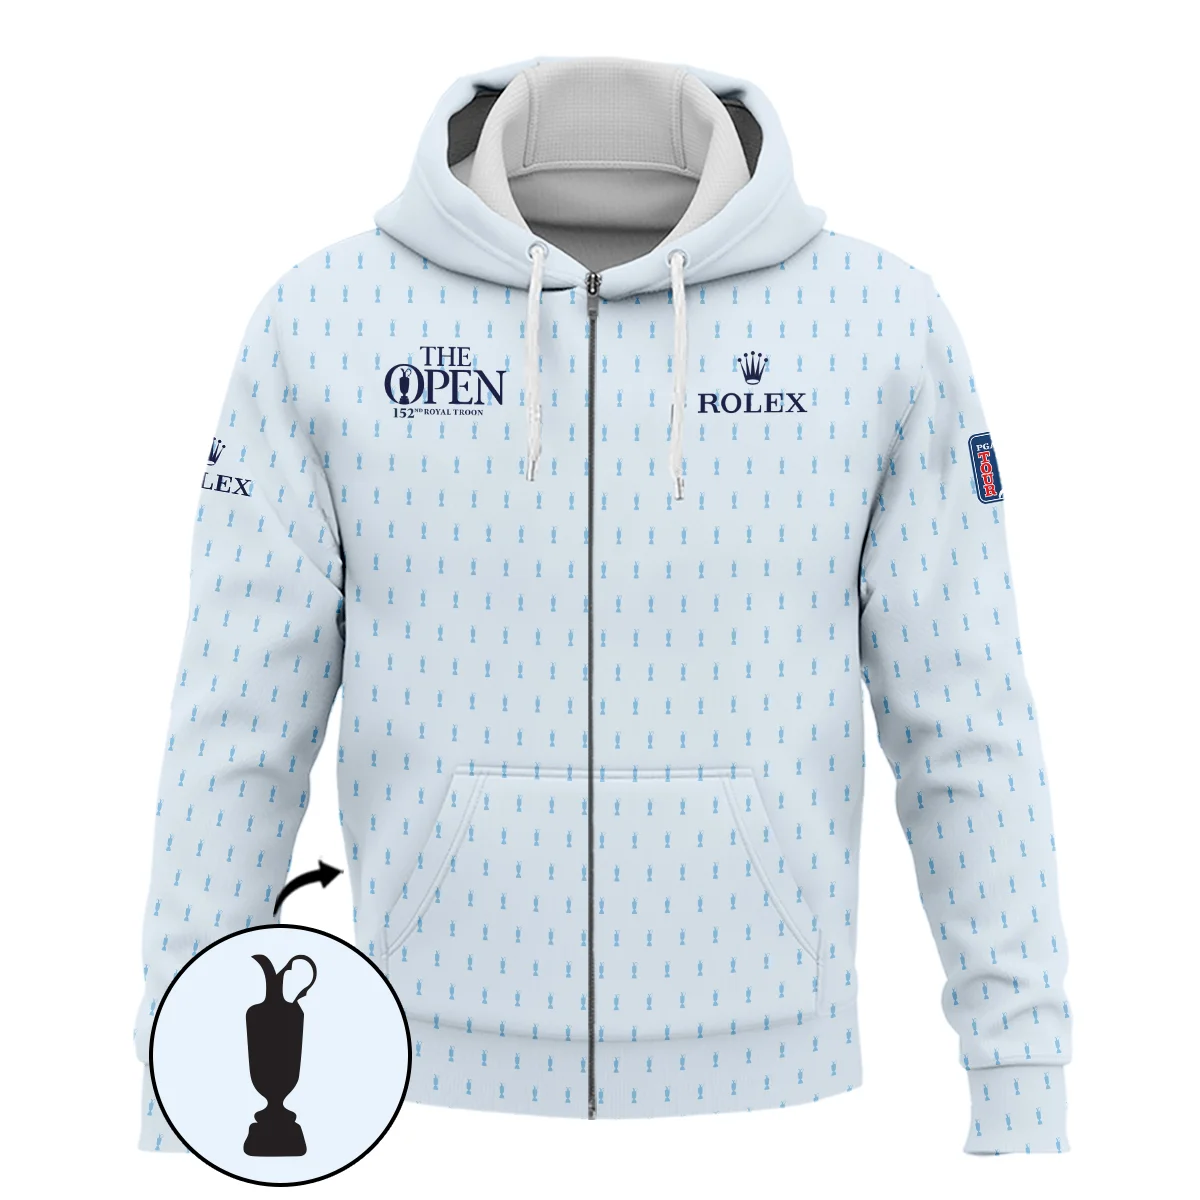 Golf Sport Light Blue Pattern Cup 152nd Open Championship Rolex Zipper Hoodie Shirt All Over Prints QTTOP160624A01ROXZHD